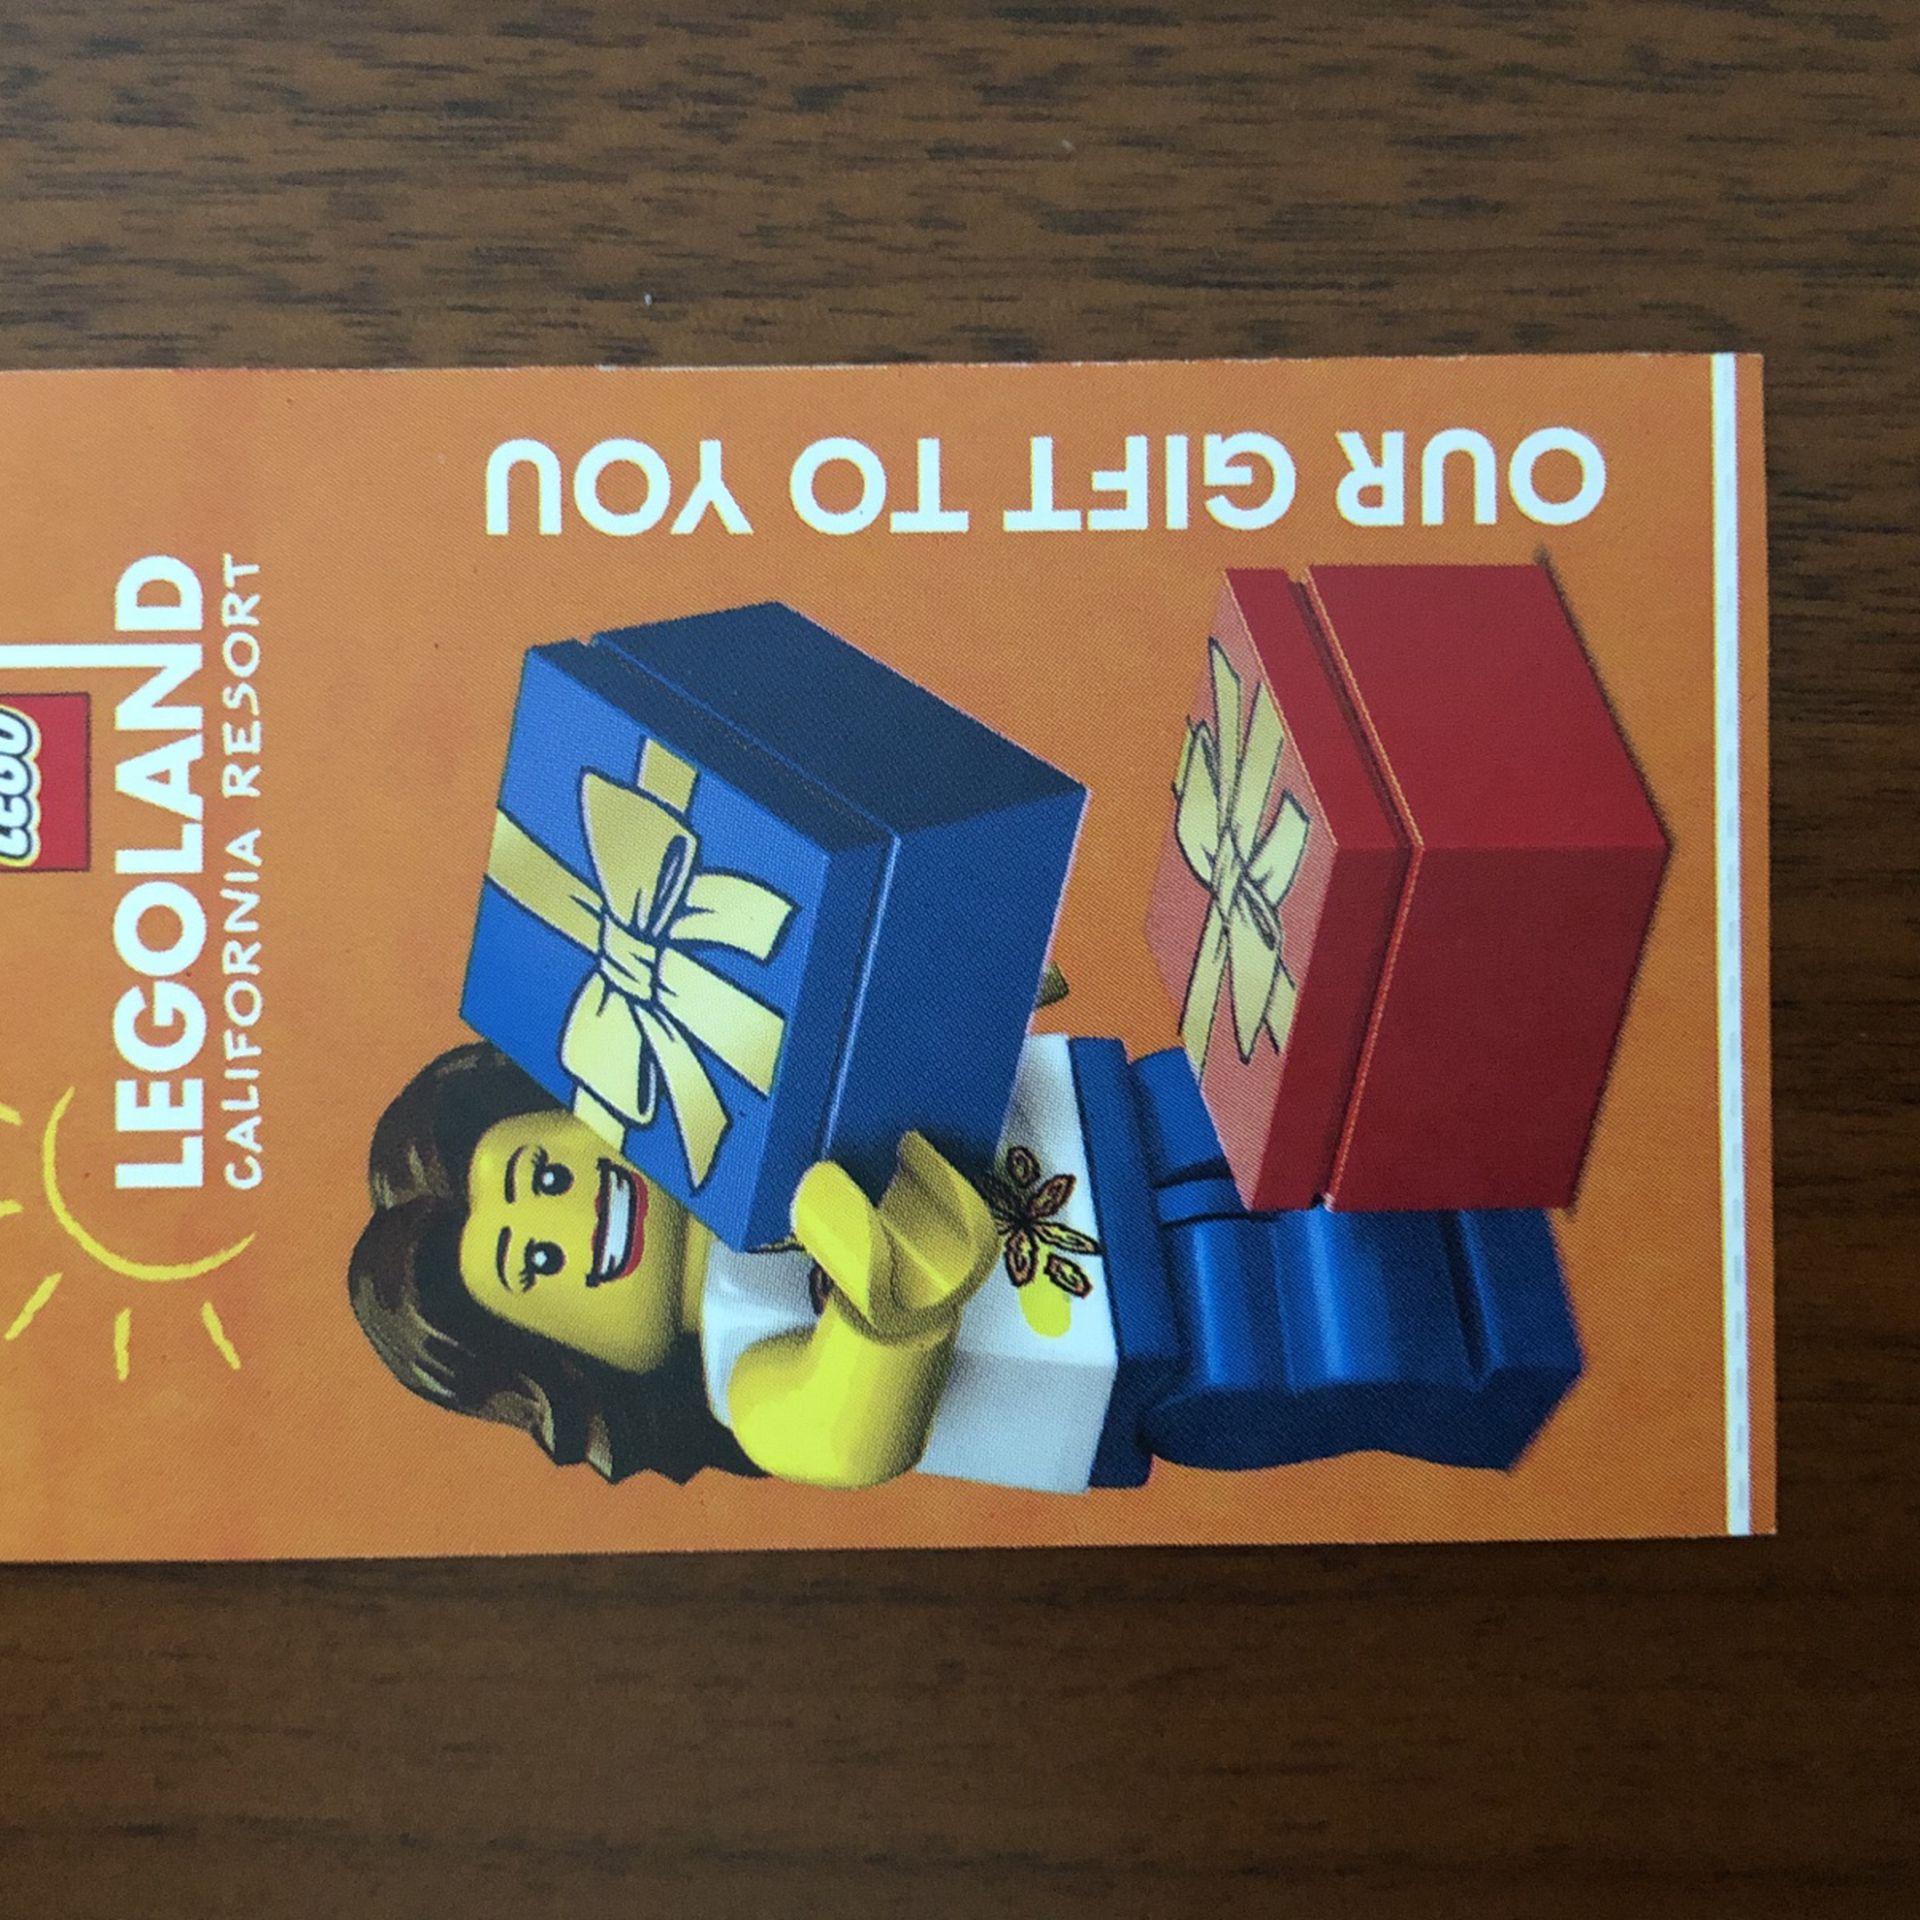 1 Legoland Sea hopper ticket 